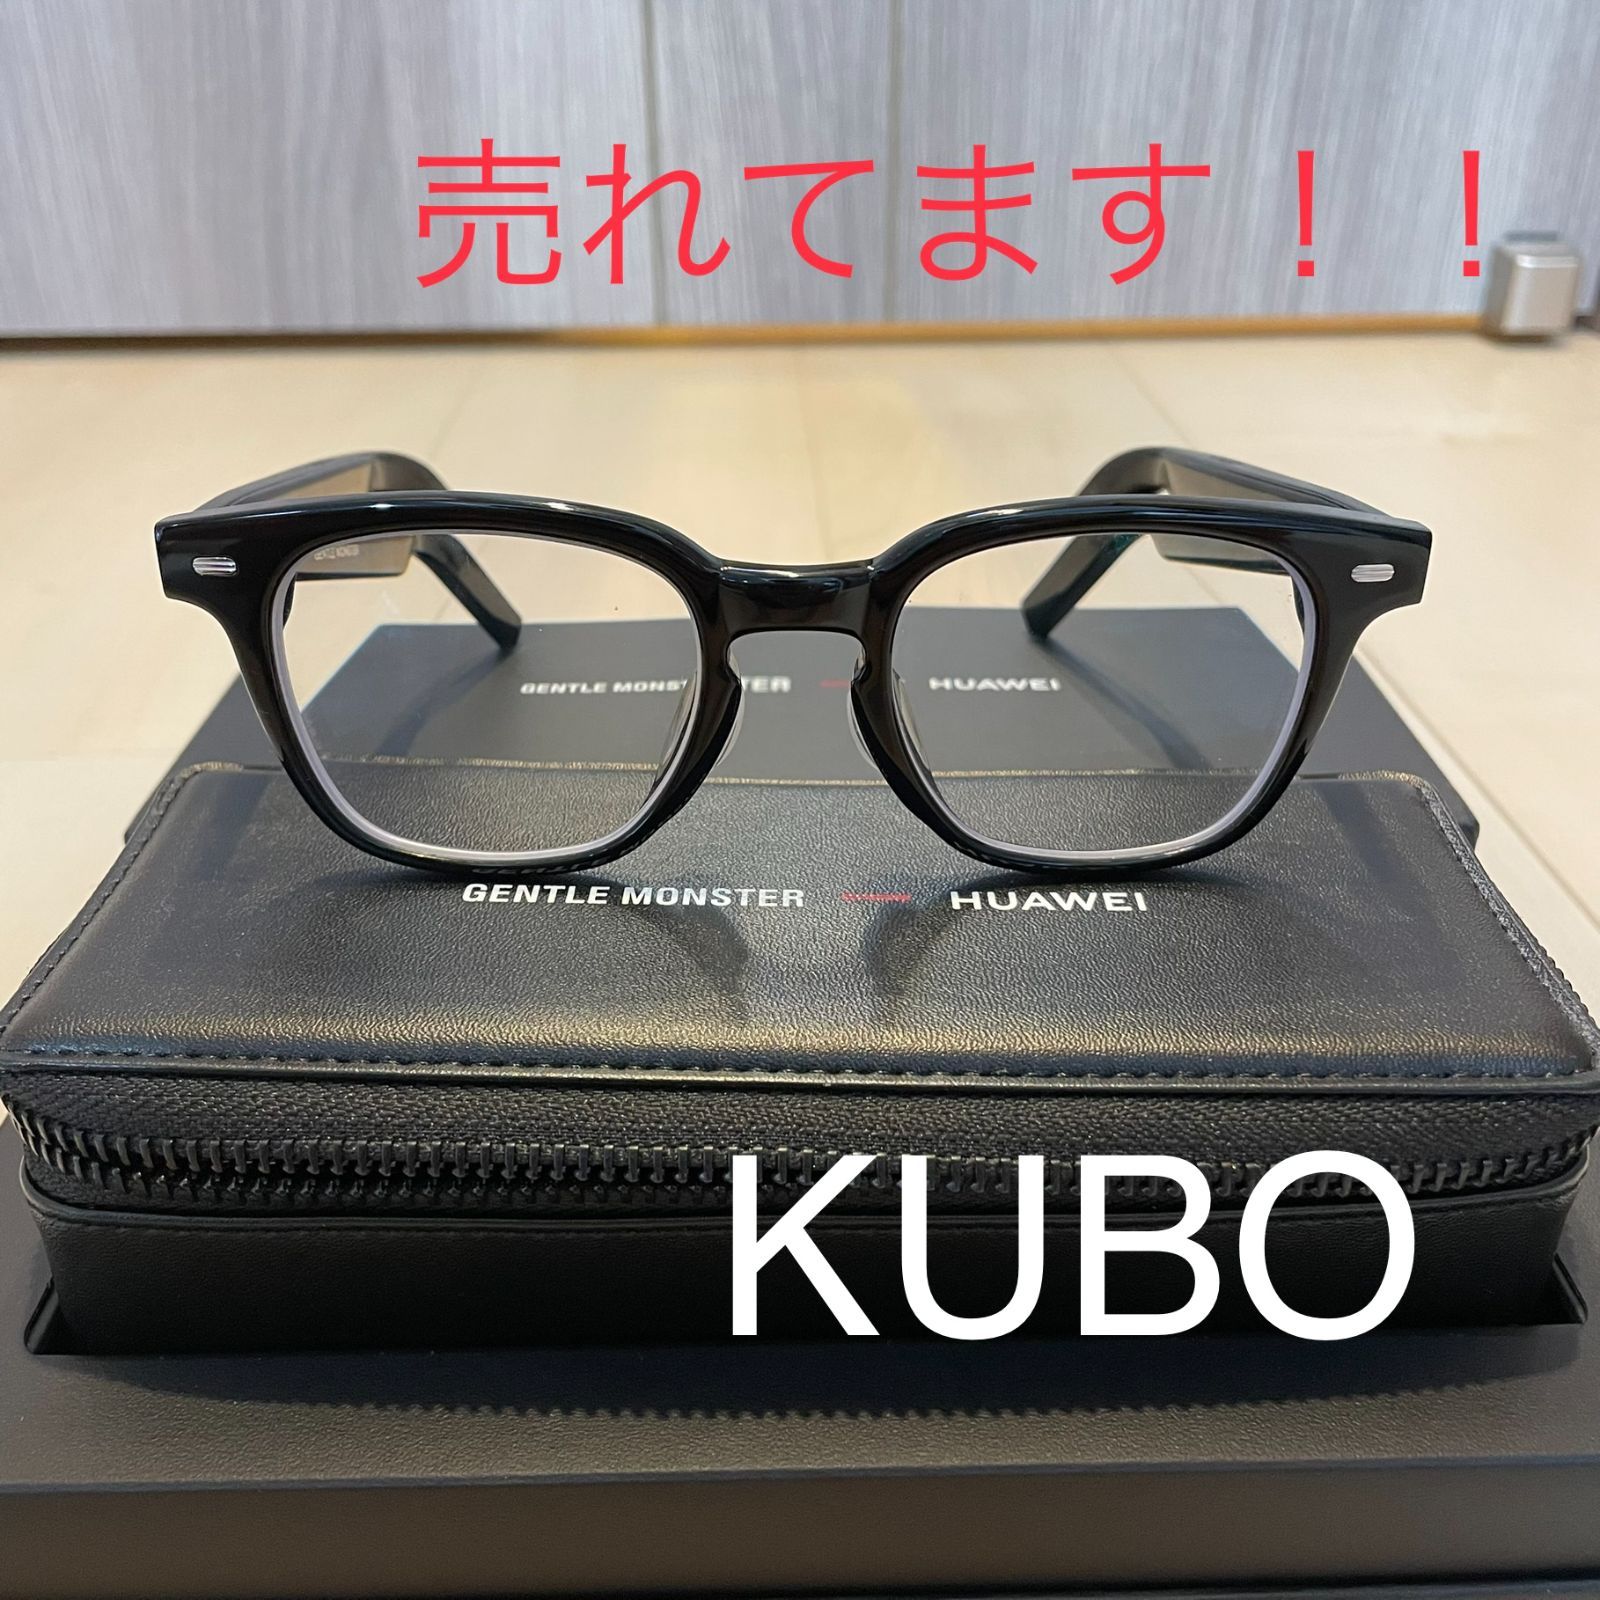 イヤホンHUAWEI X GENTLE MONSTER Eyewear II KUBO